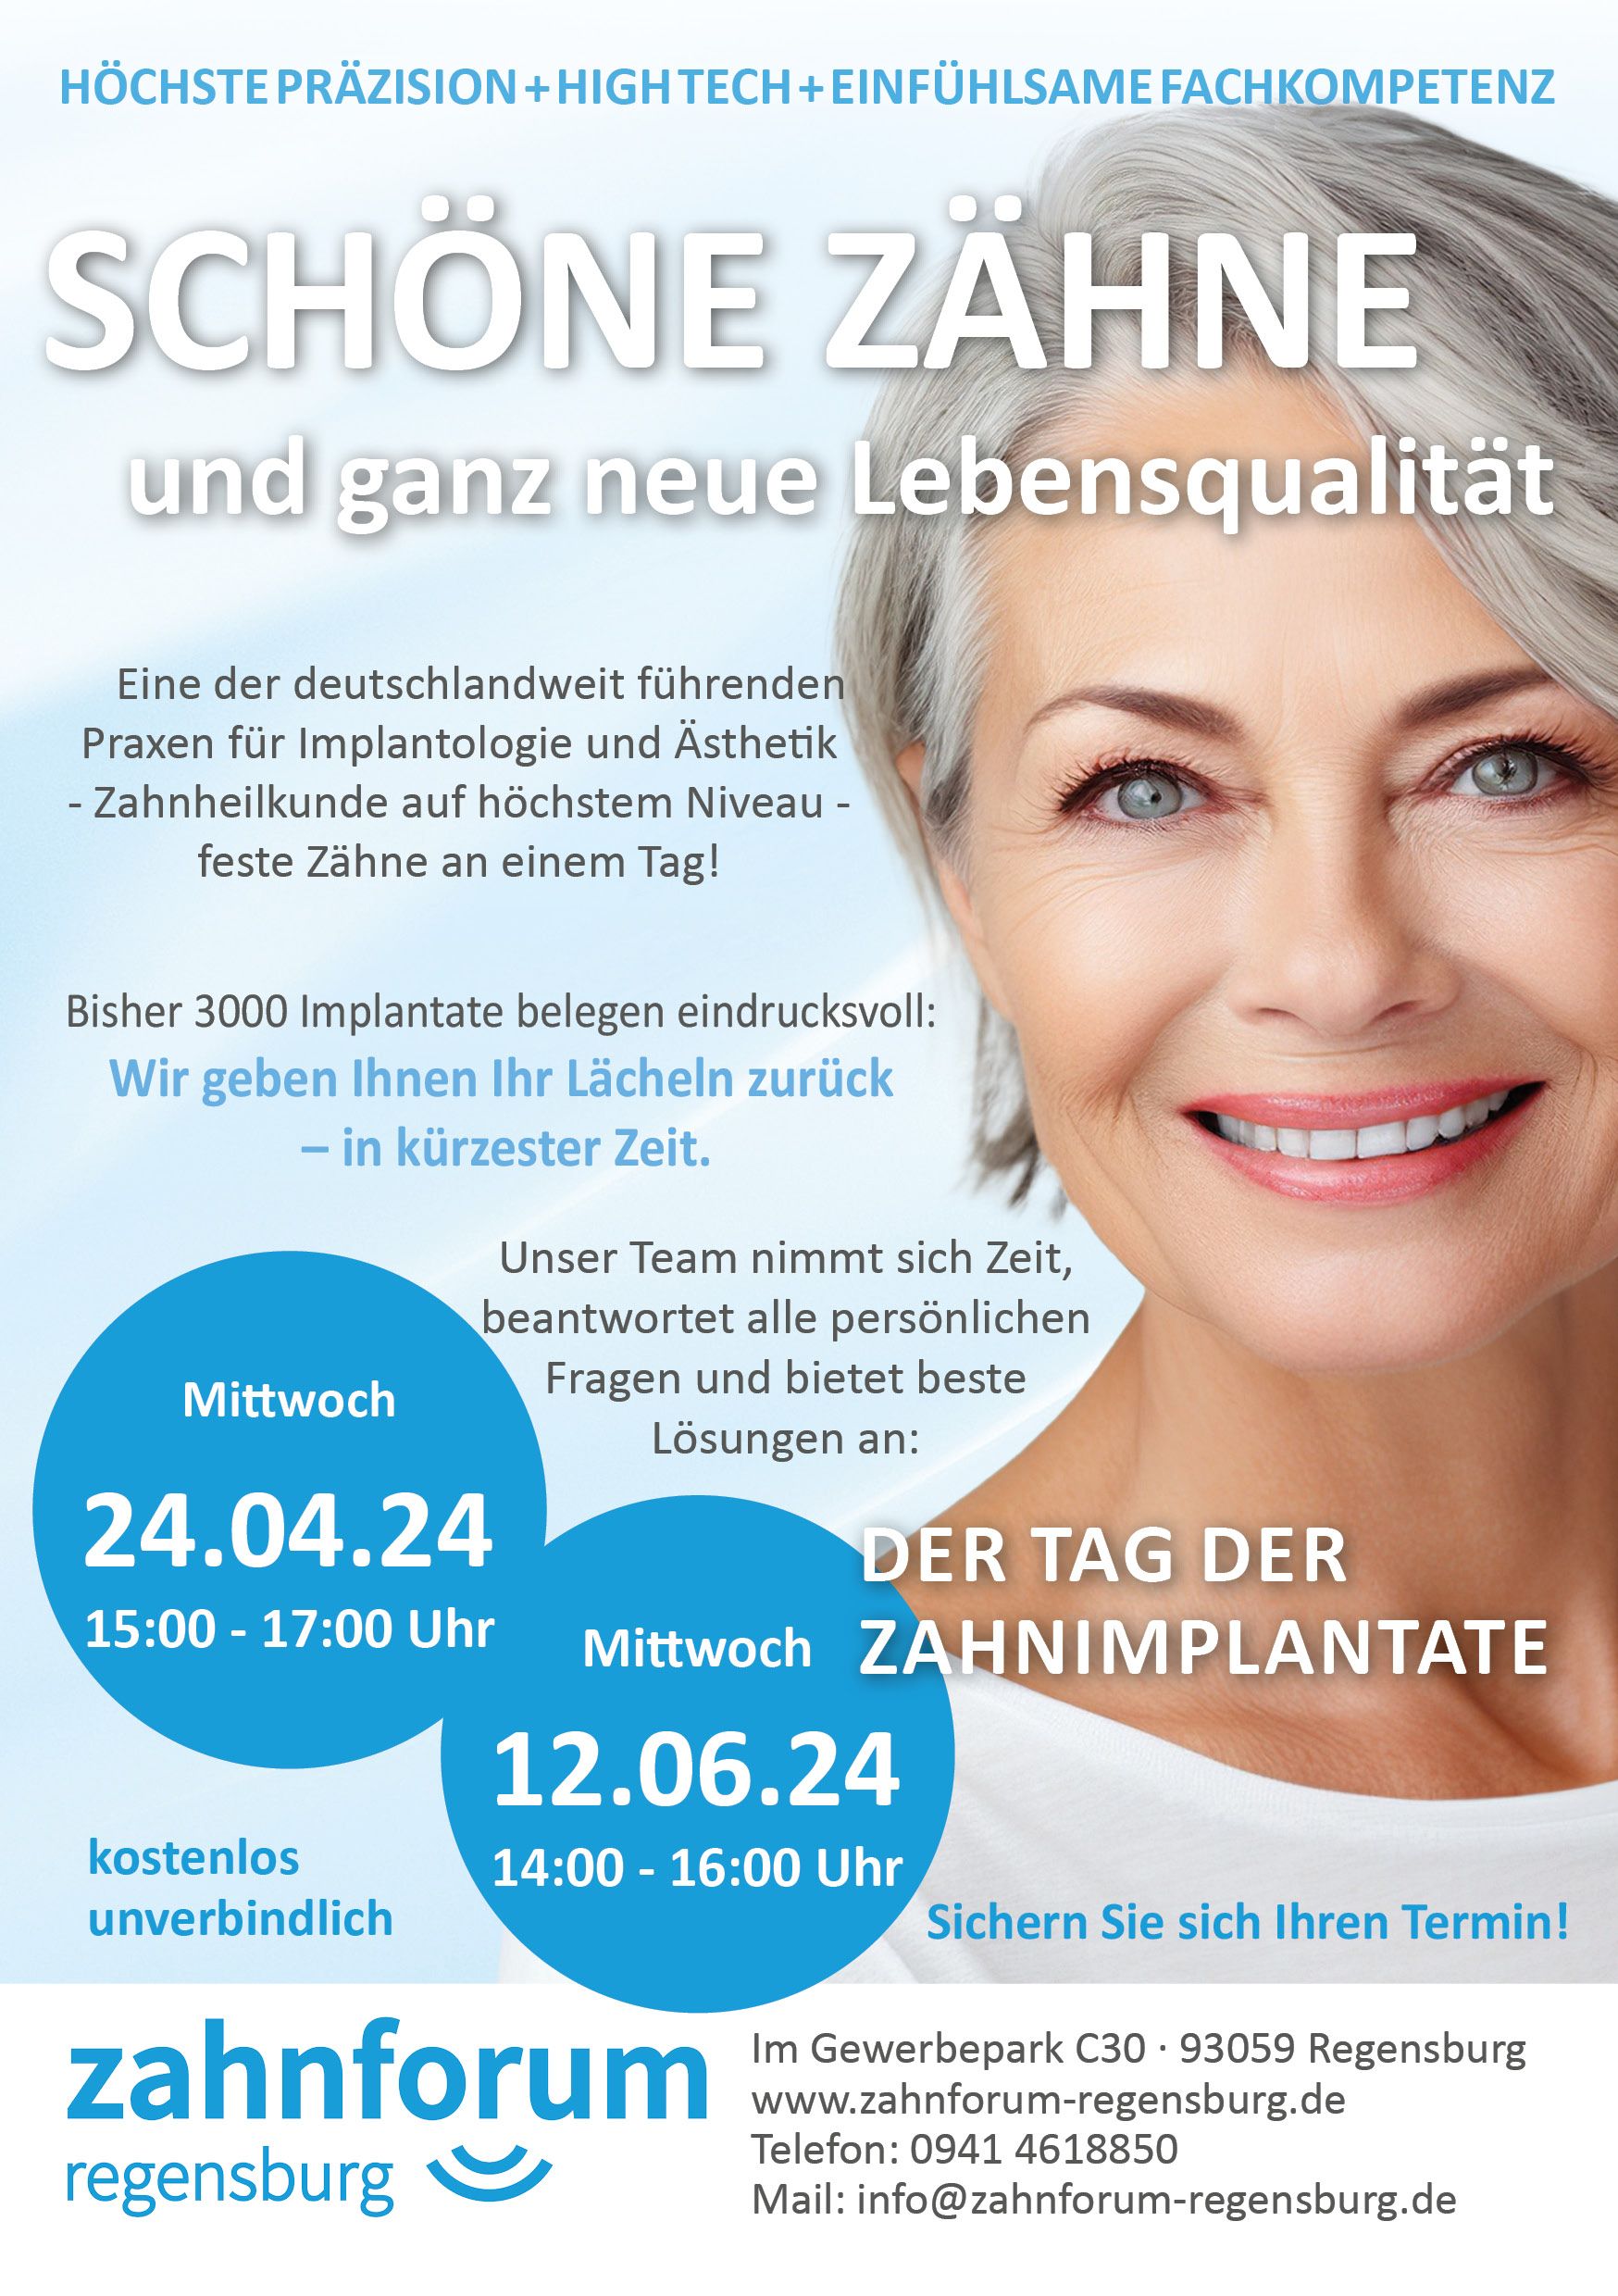 Zahnforum Regensburg - Tag der Implantate - kostenlos informieren!